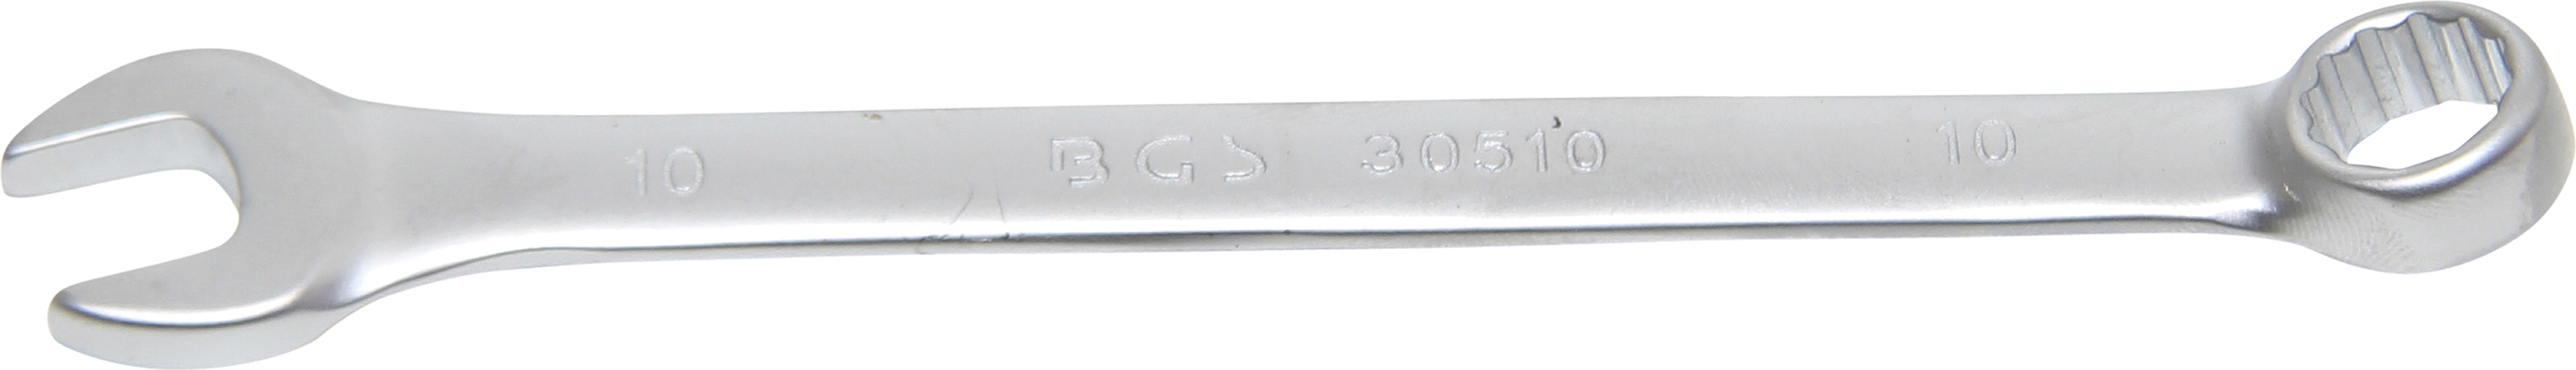 Maulringschlüssel 10 mm BGS 30510